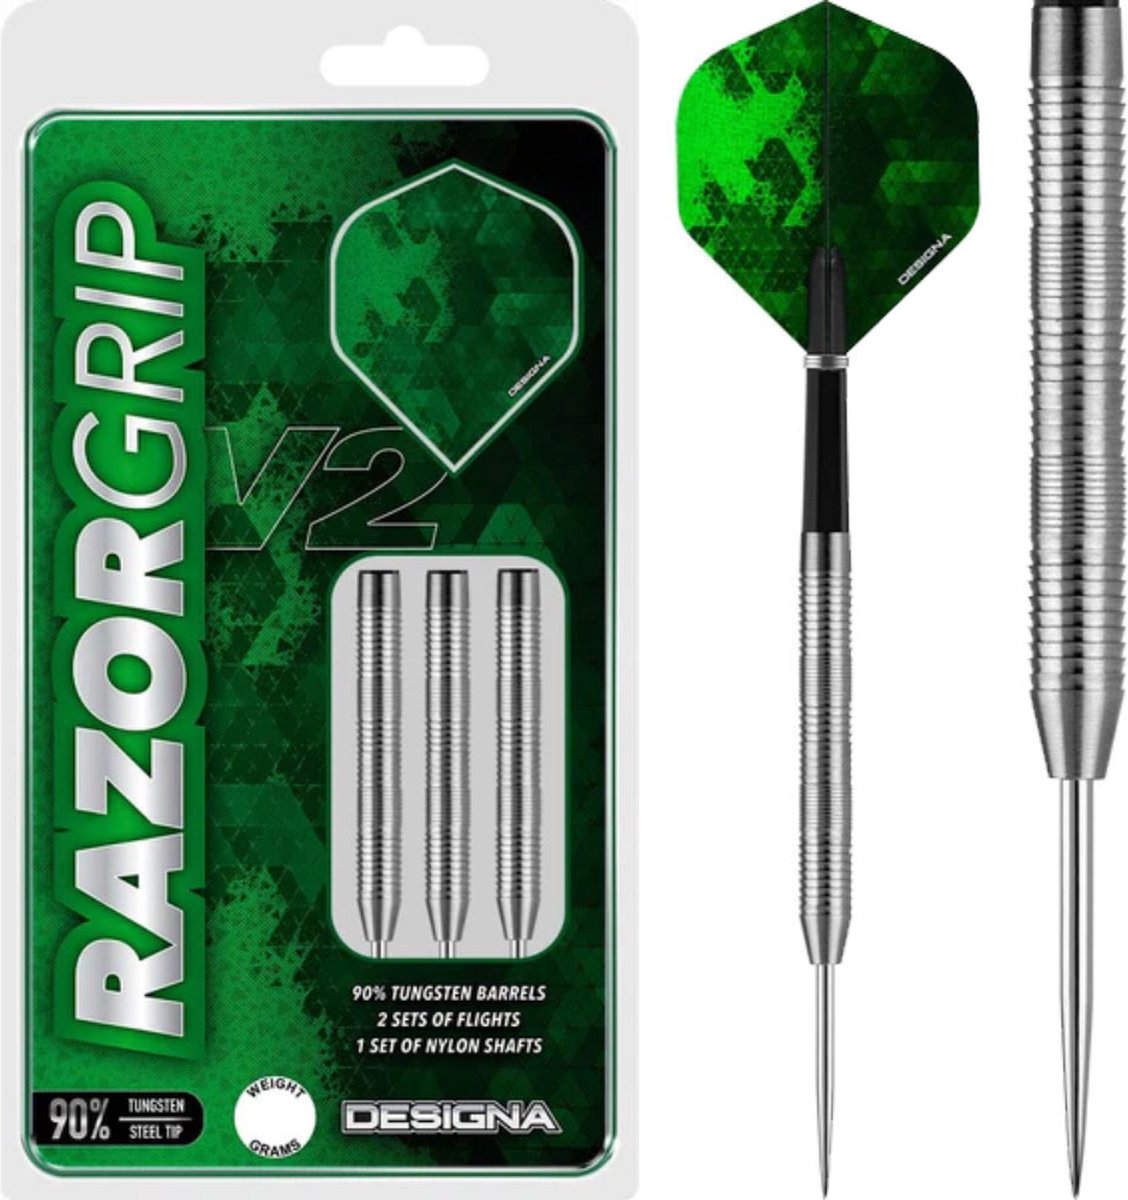 Designa Darts Razor Grip V2 Dual Micro Grip 24 gram